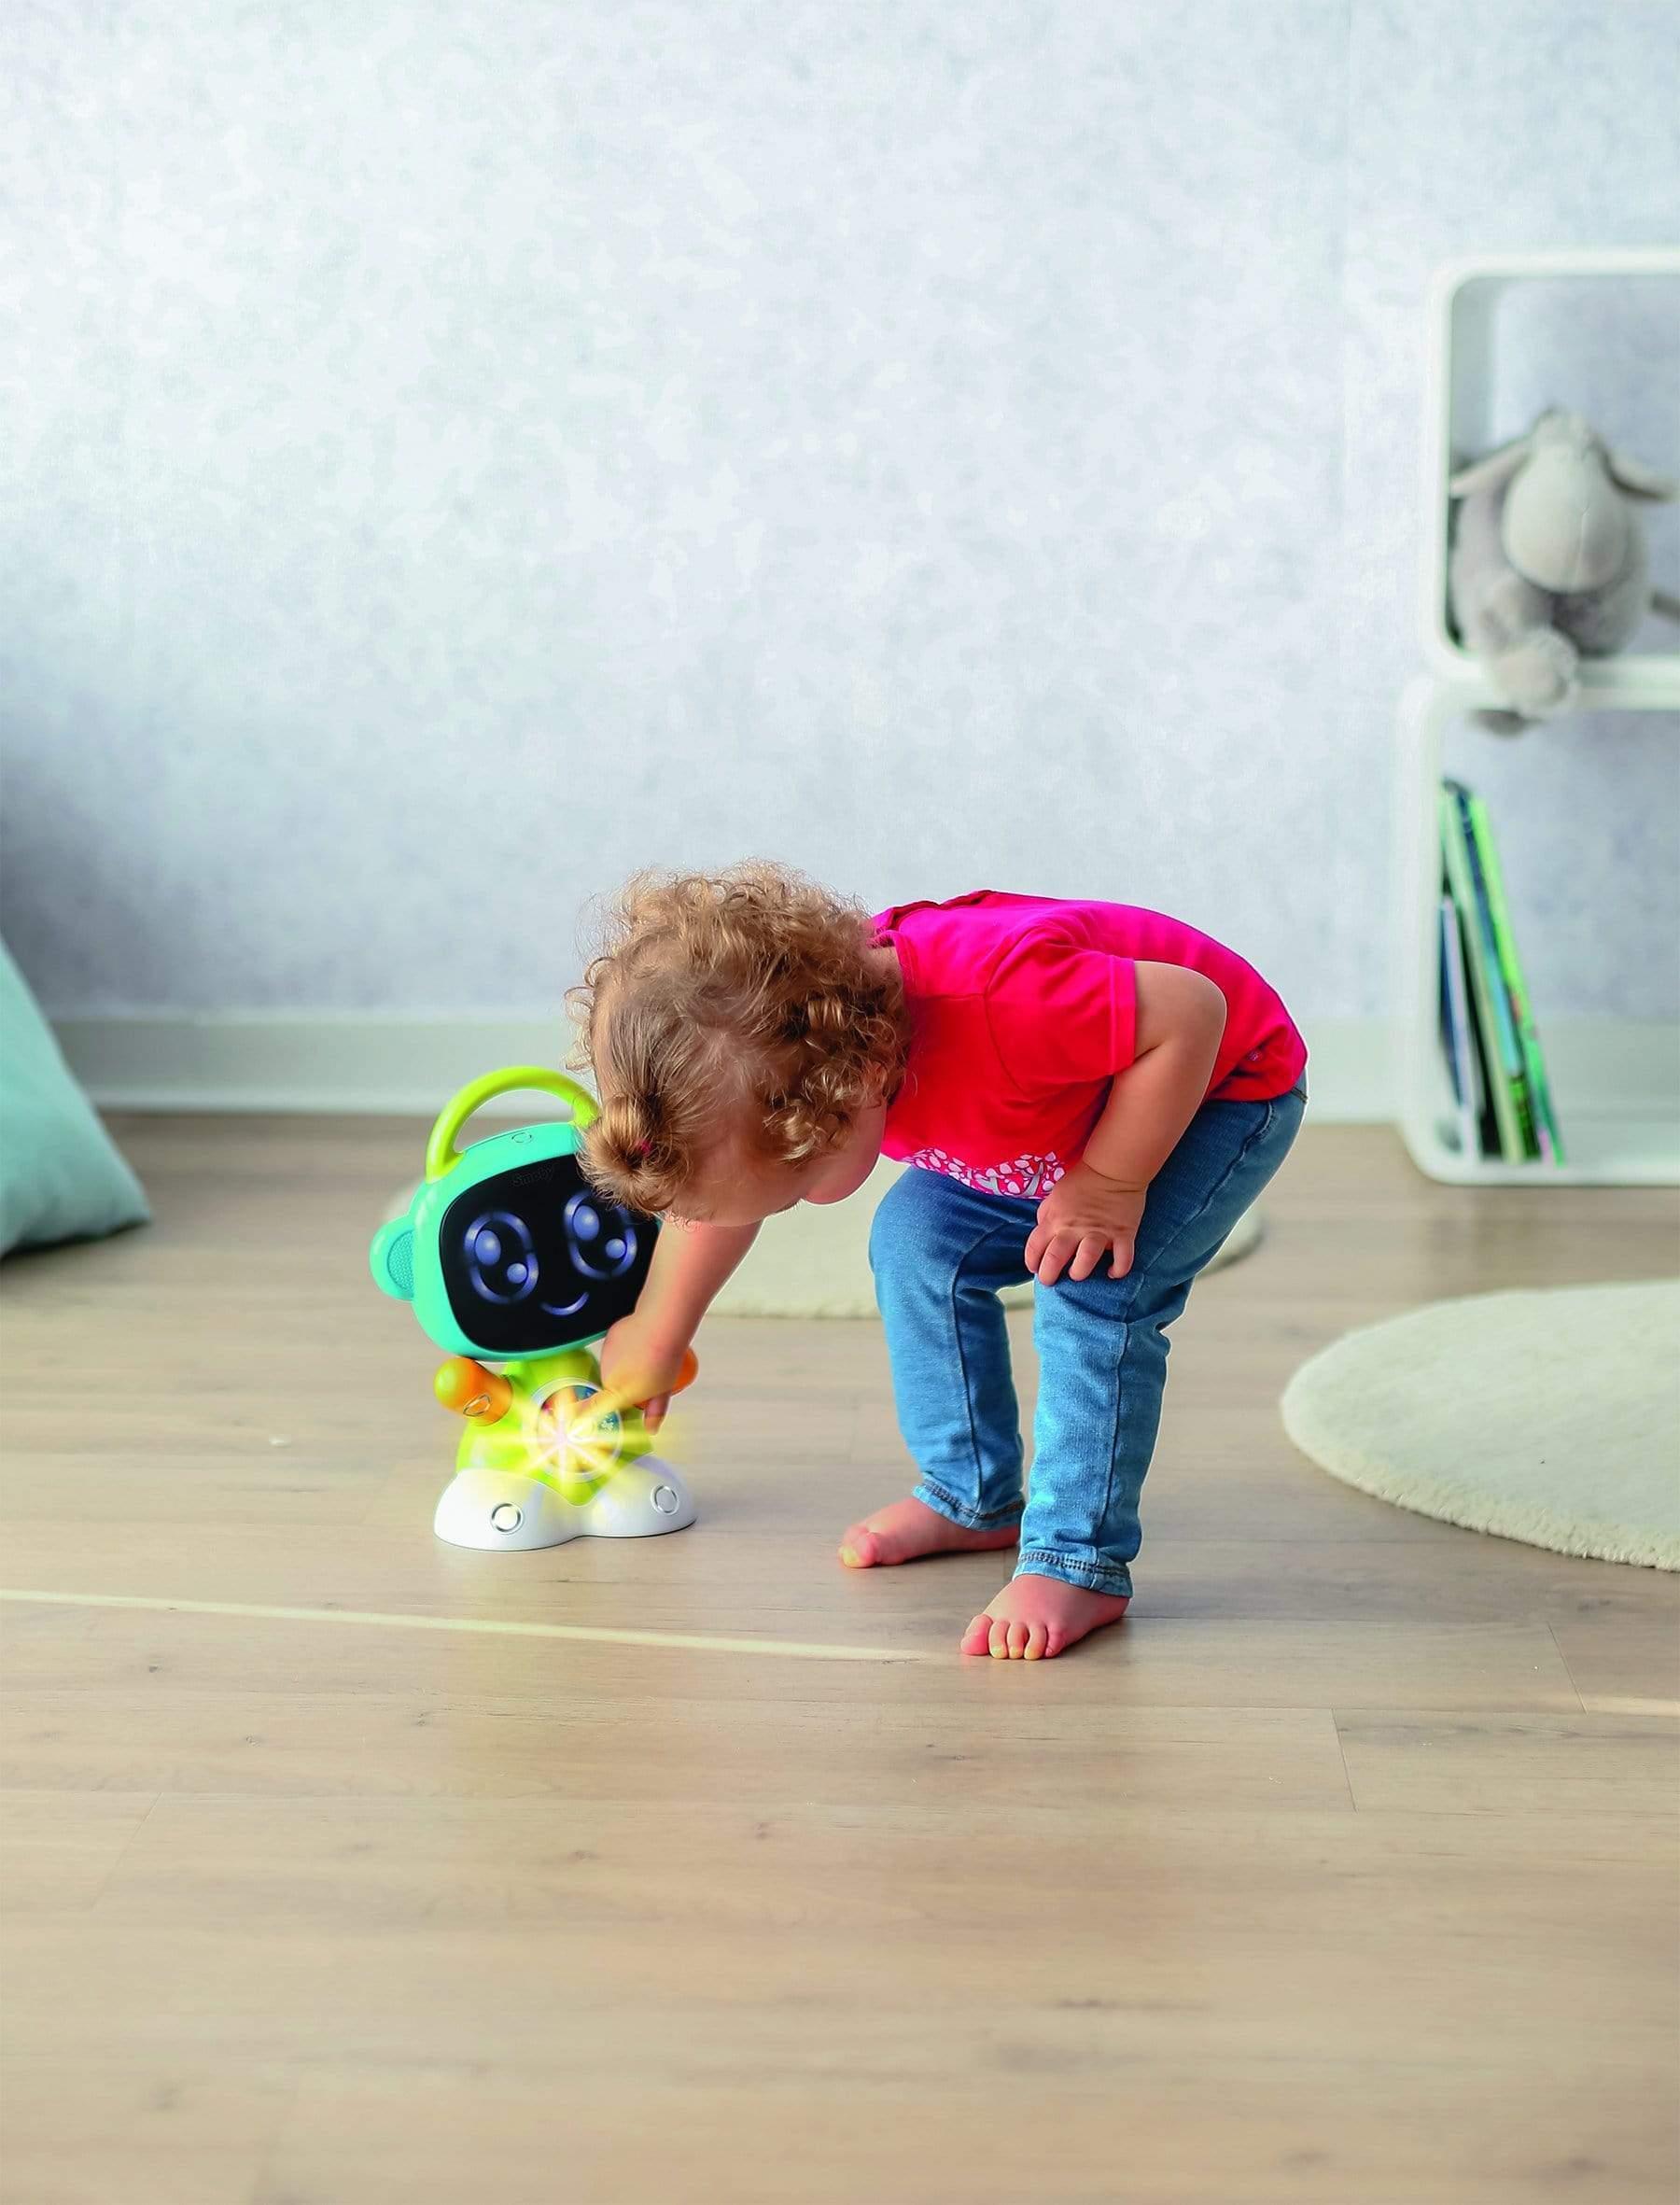 لعبة روبوت اطفال ذكي تعليمي وترفيهي سموبي Smoby Educational And Entertaining Smart Robot - cG9zdDo2MDc4OQ==